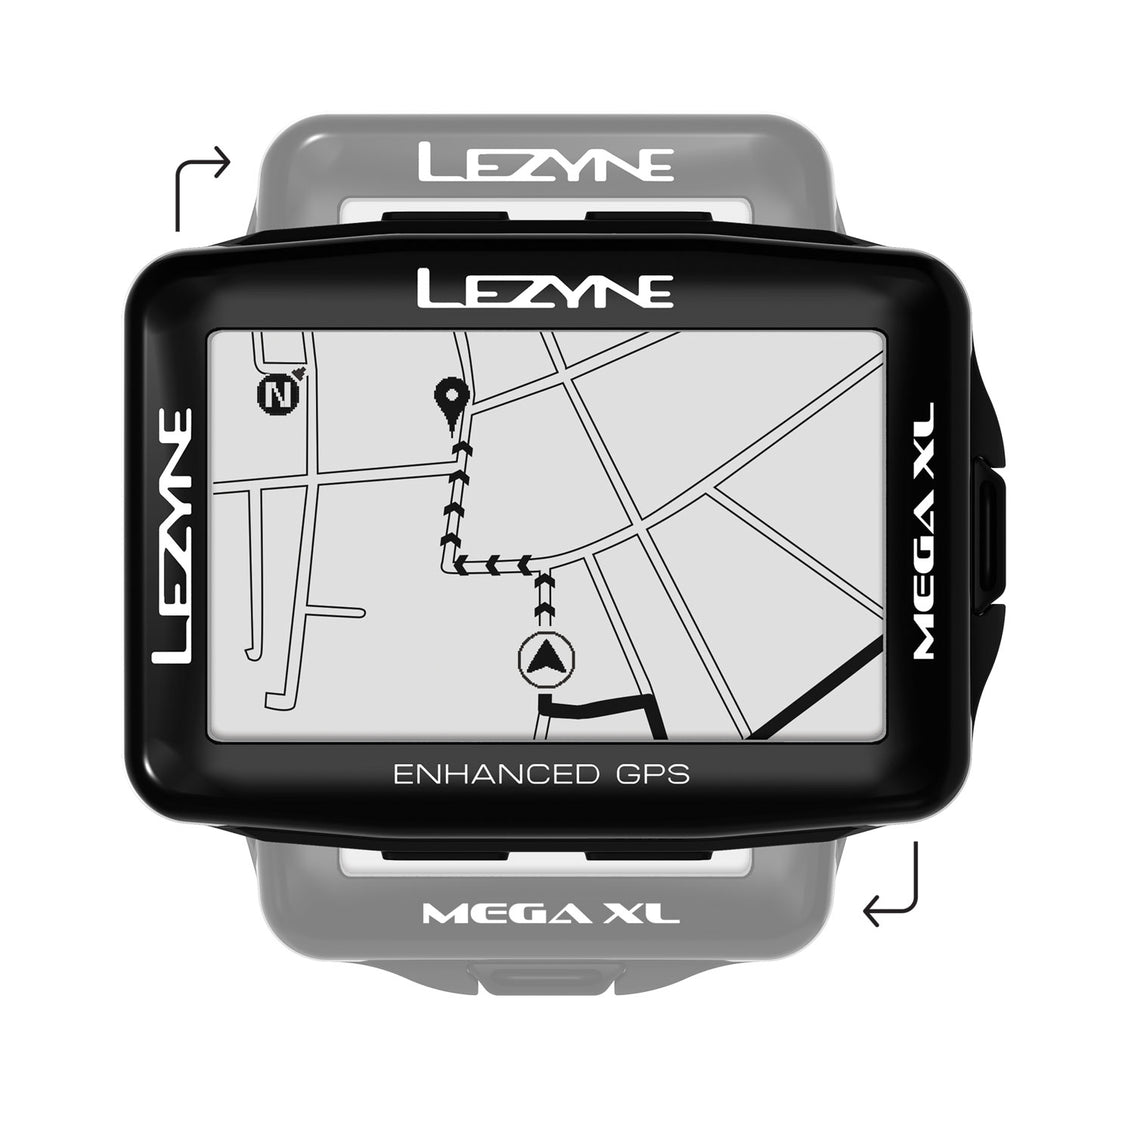 MEGA XL GPS